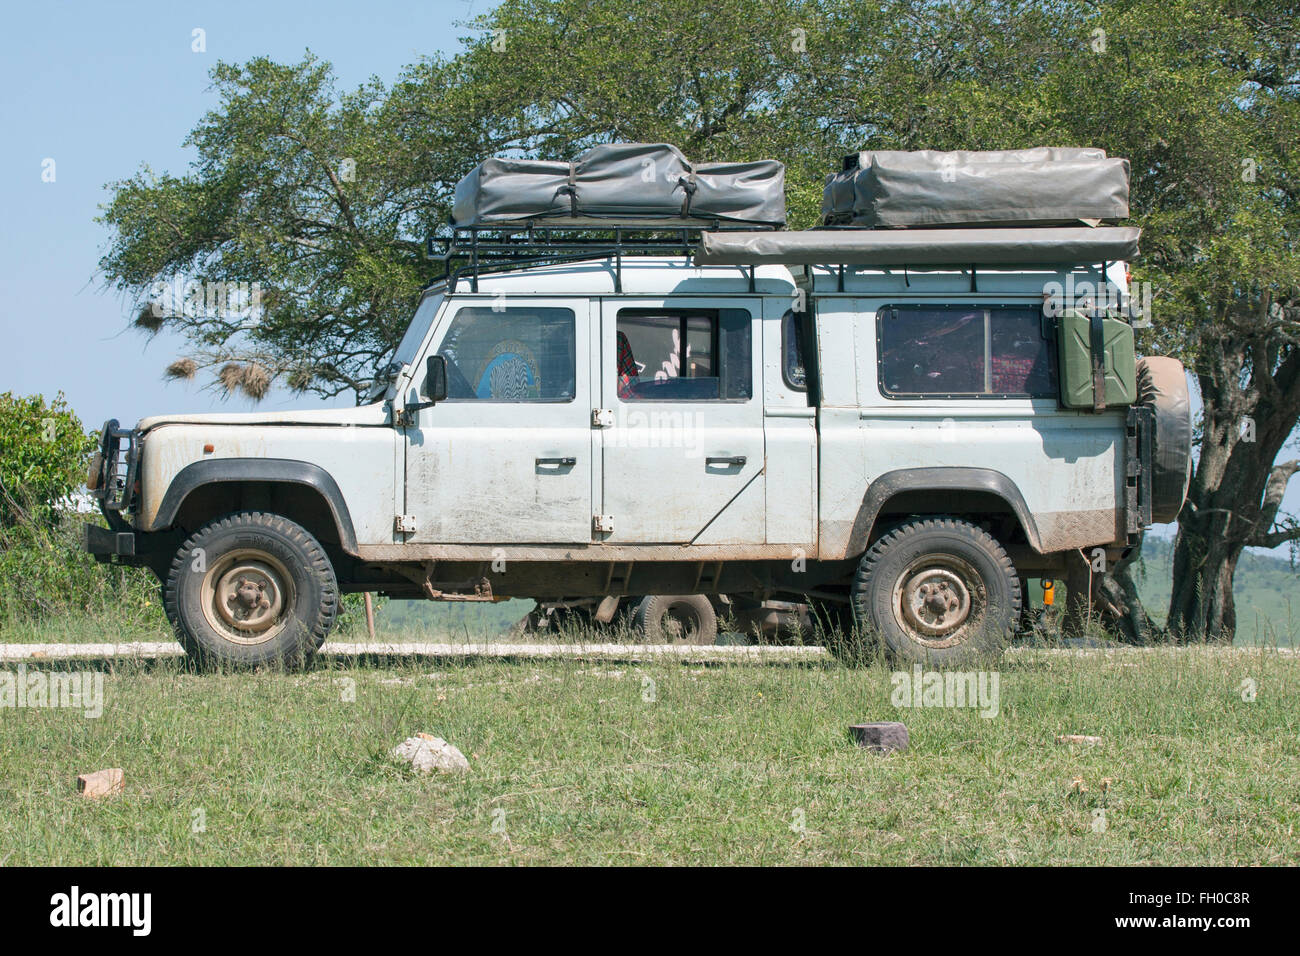 Alte Land Rover Defender 110 mit zwei Dachzelte geparkt am Straßenrand Erfrischung van Tansania Stockfoto